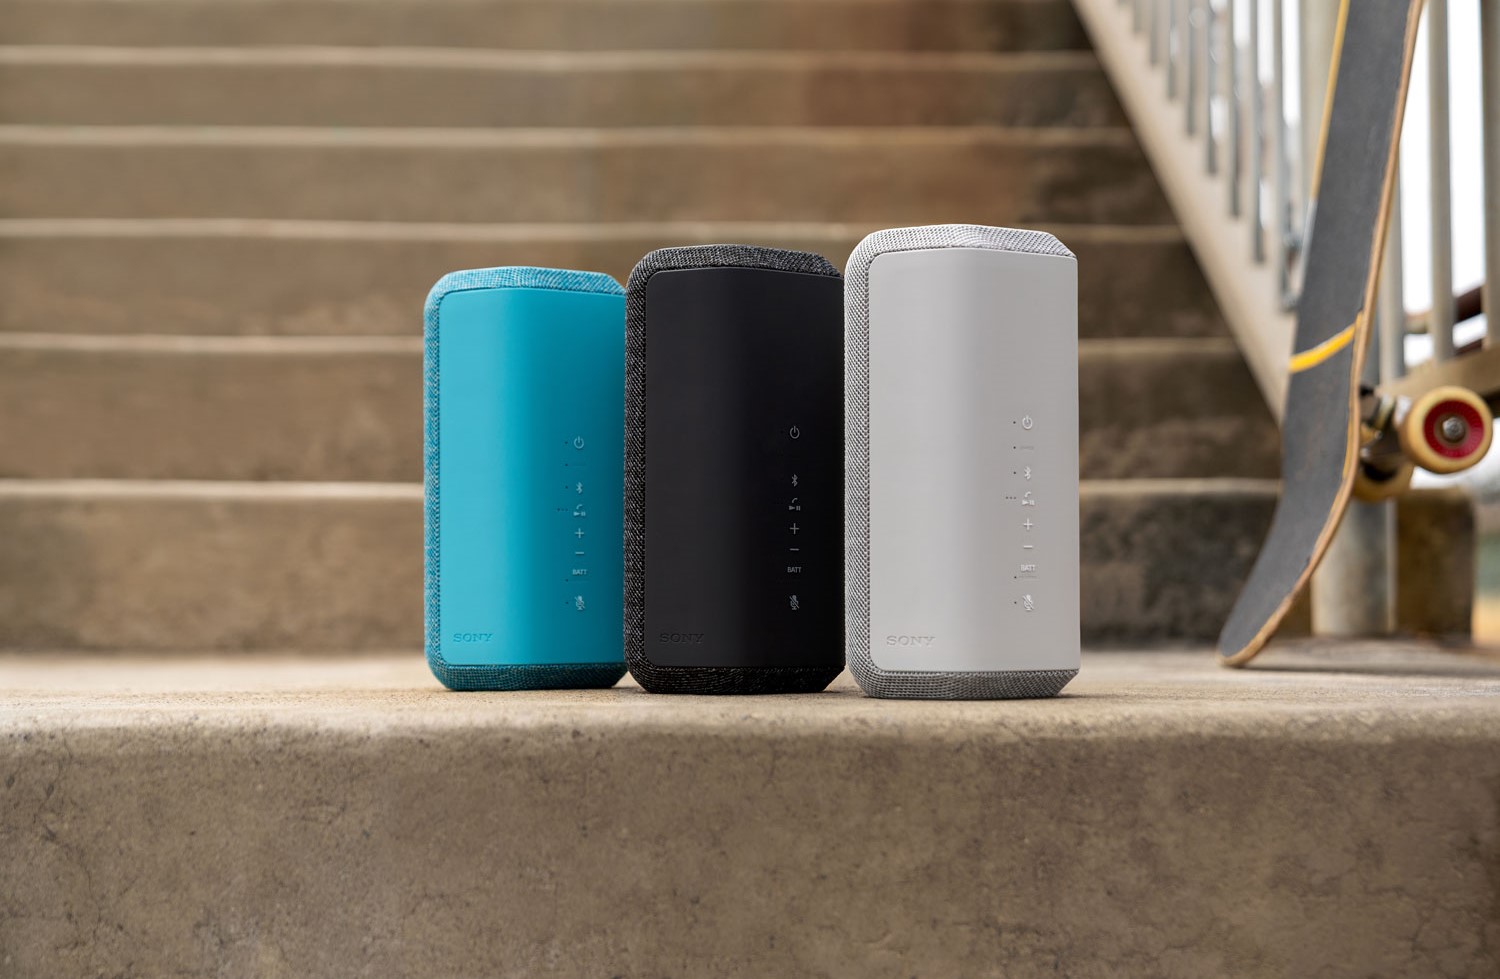 Should You Get a Smart Speaker or a Bluetooth Speaker?